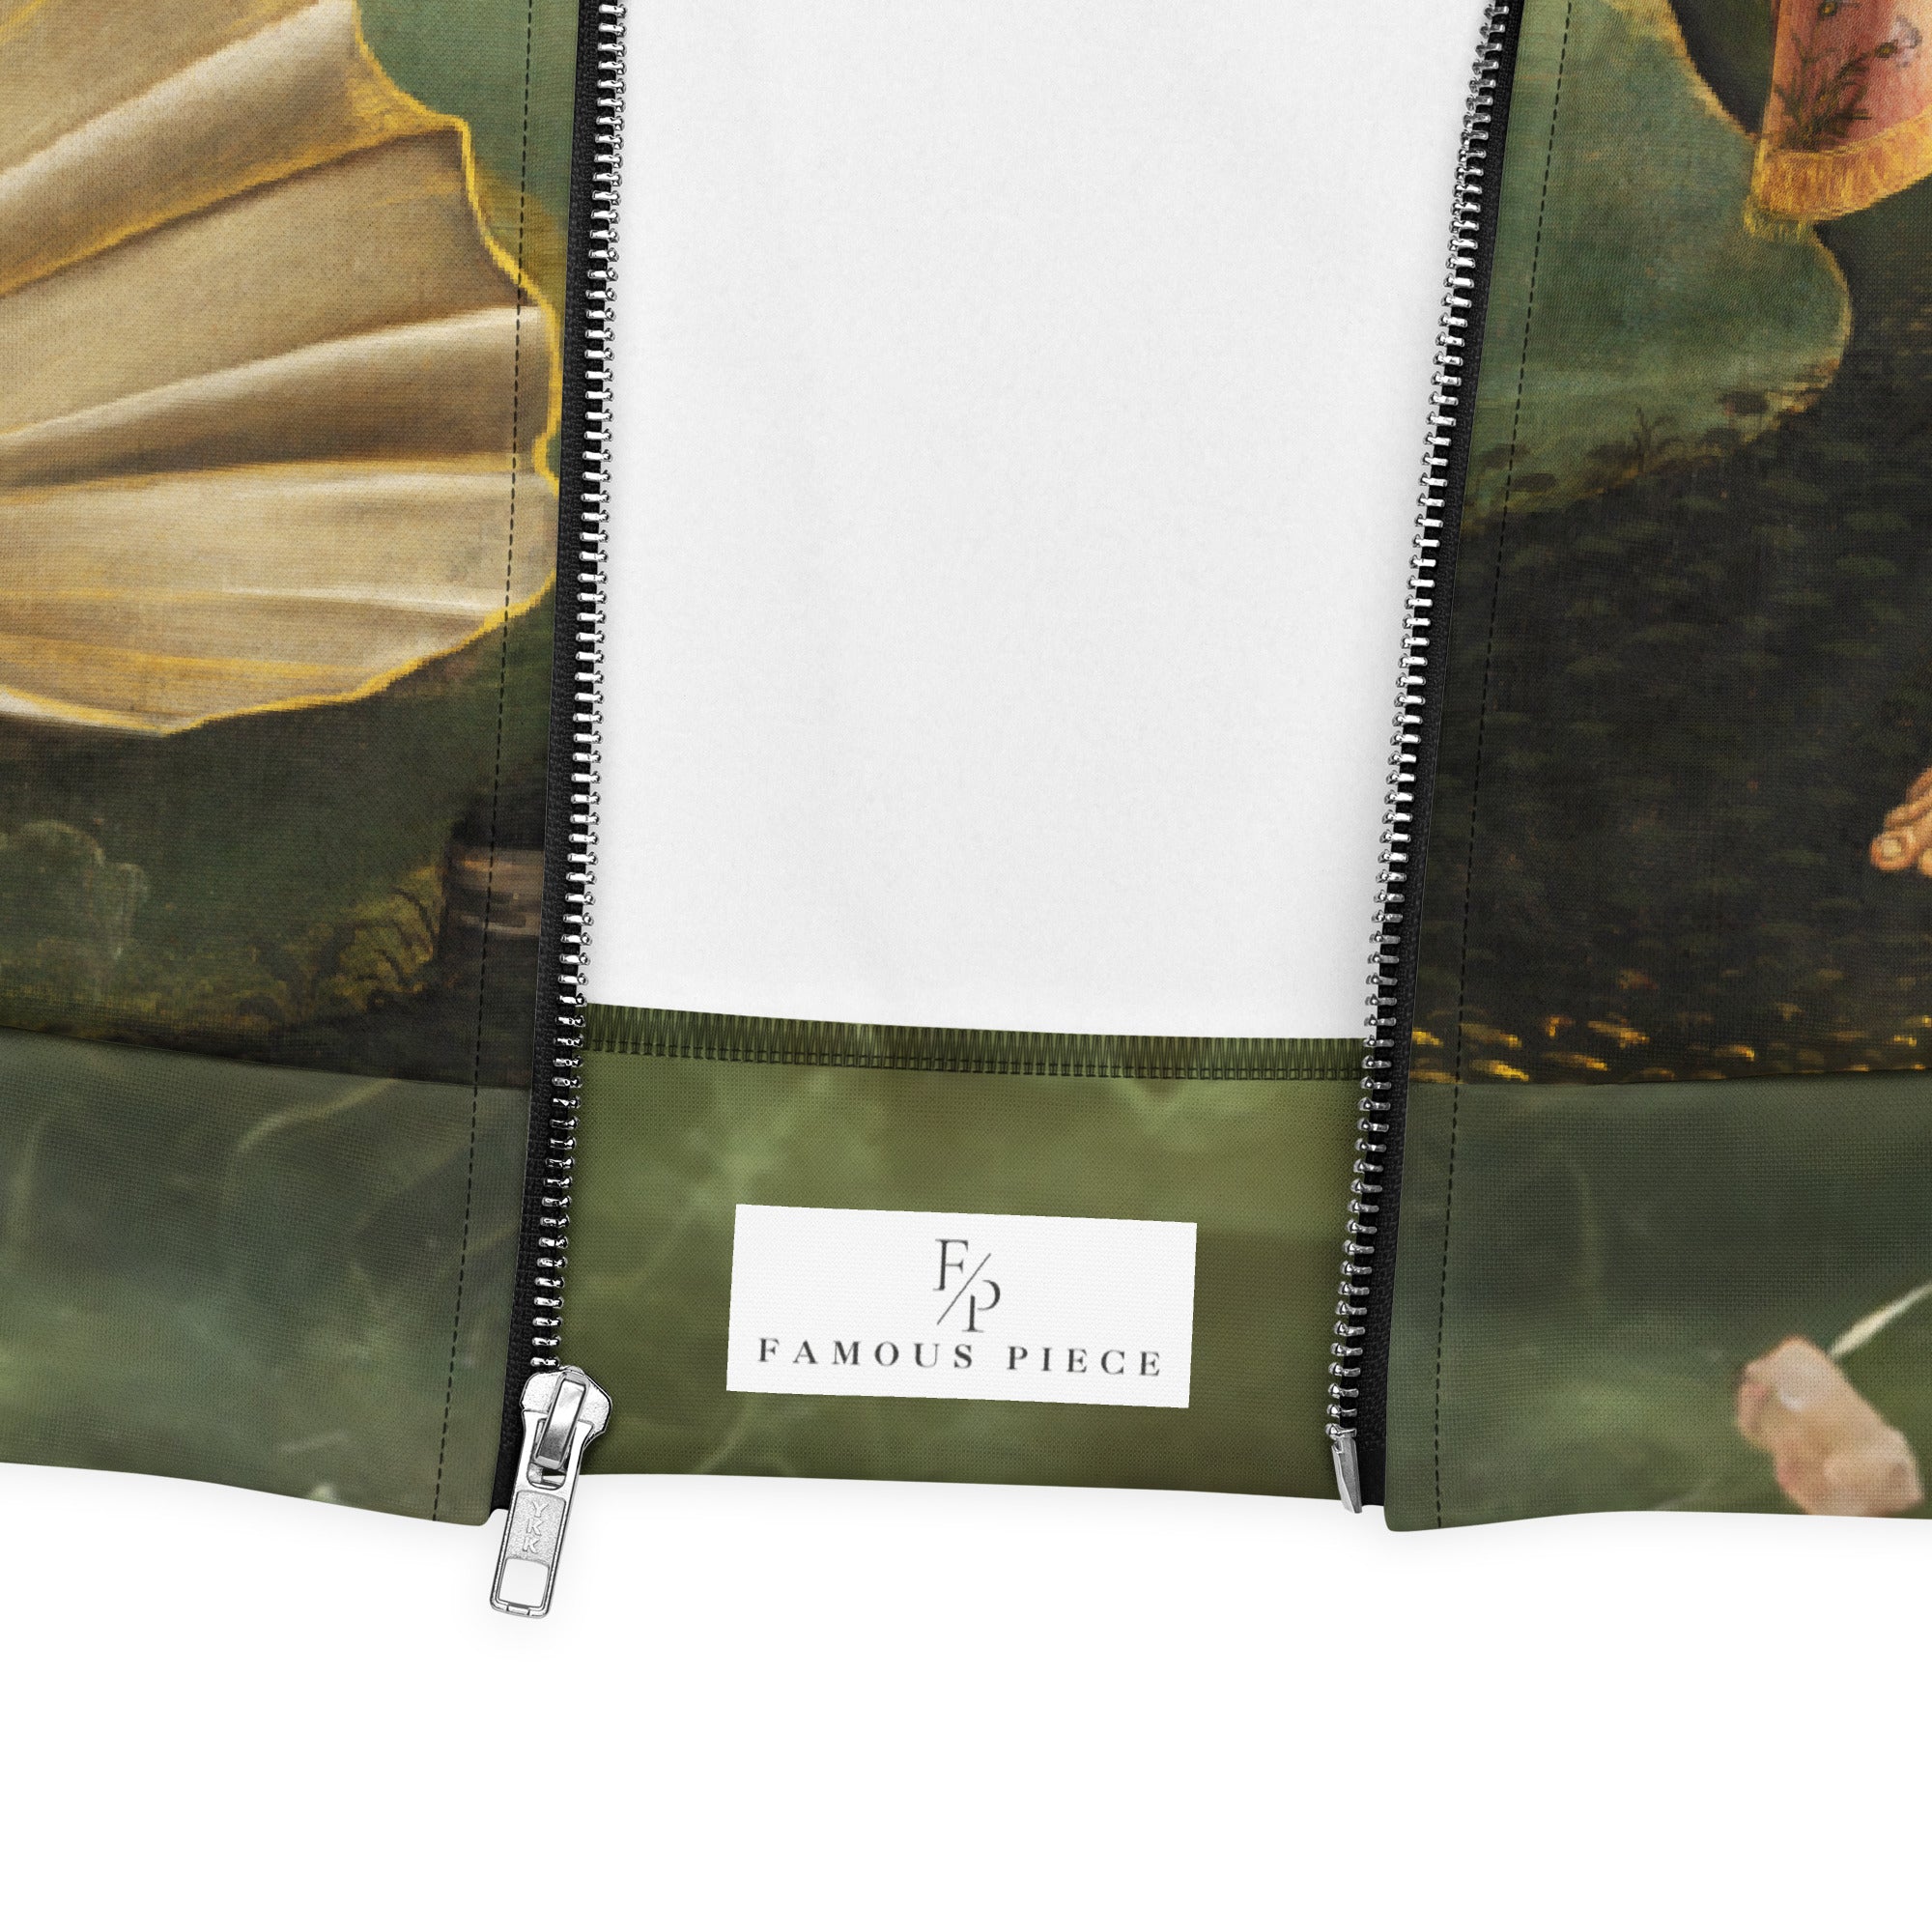 Sandro Botticelli 'Primavera' Famous Painting Bomberjack | Allover Print Unisex Art Bomber Jacket